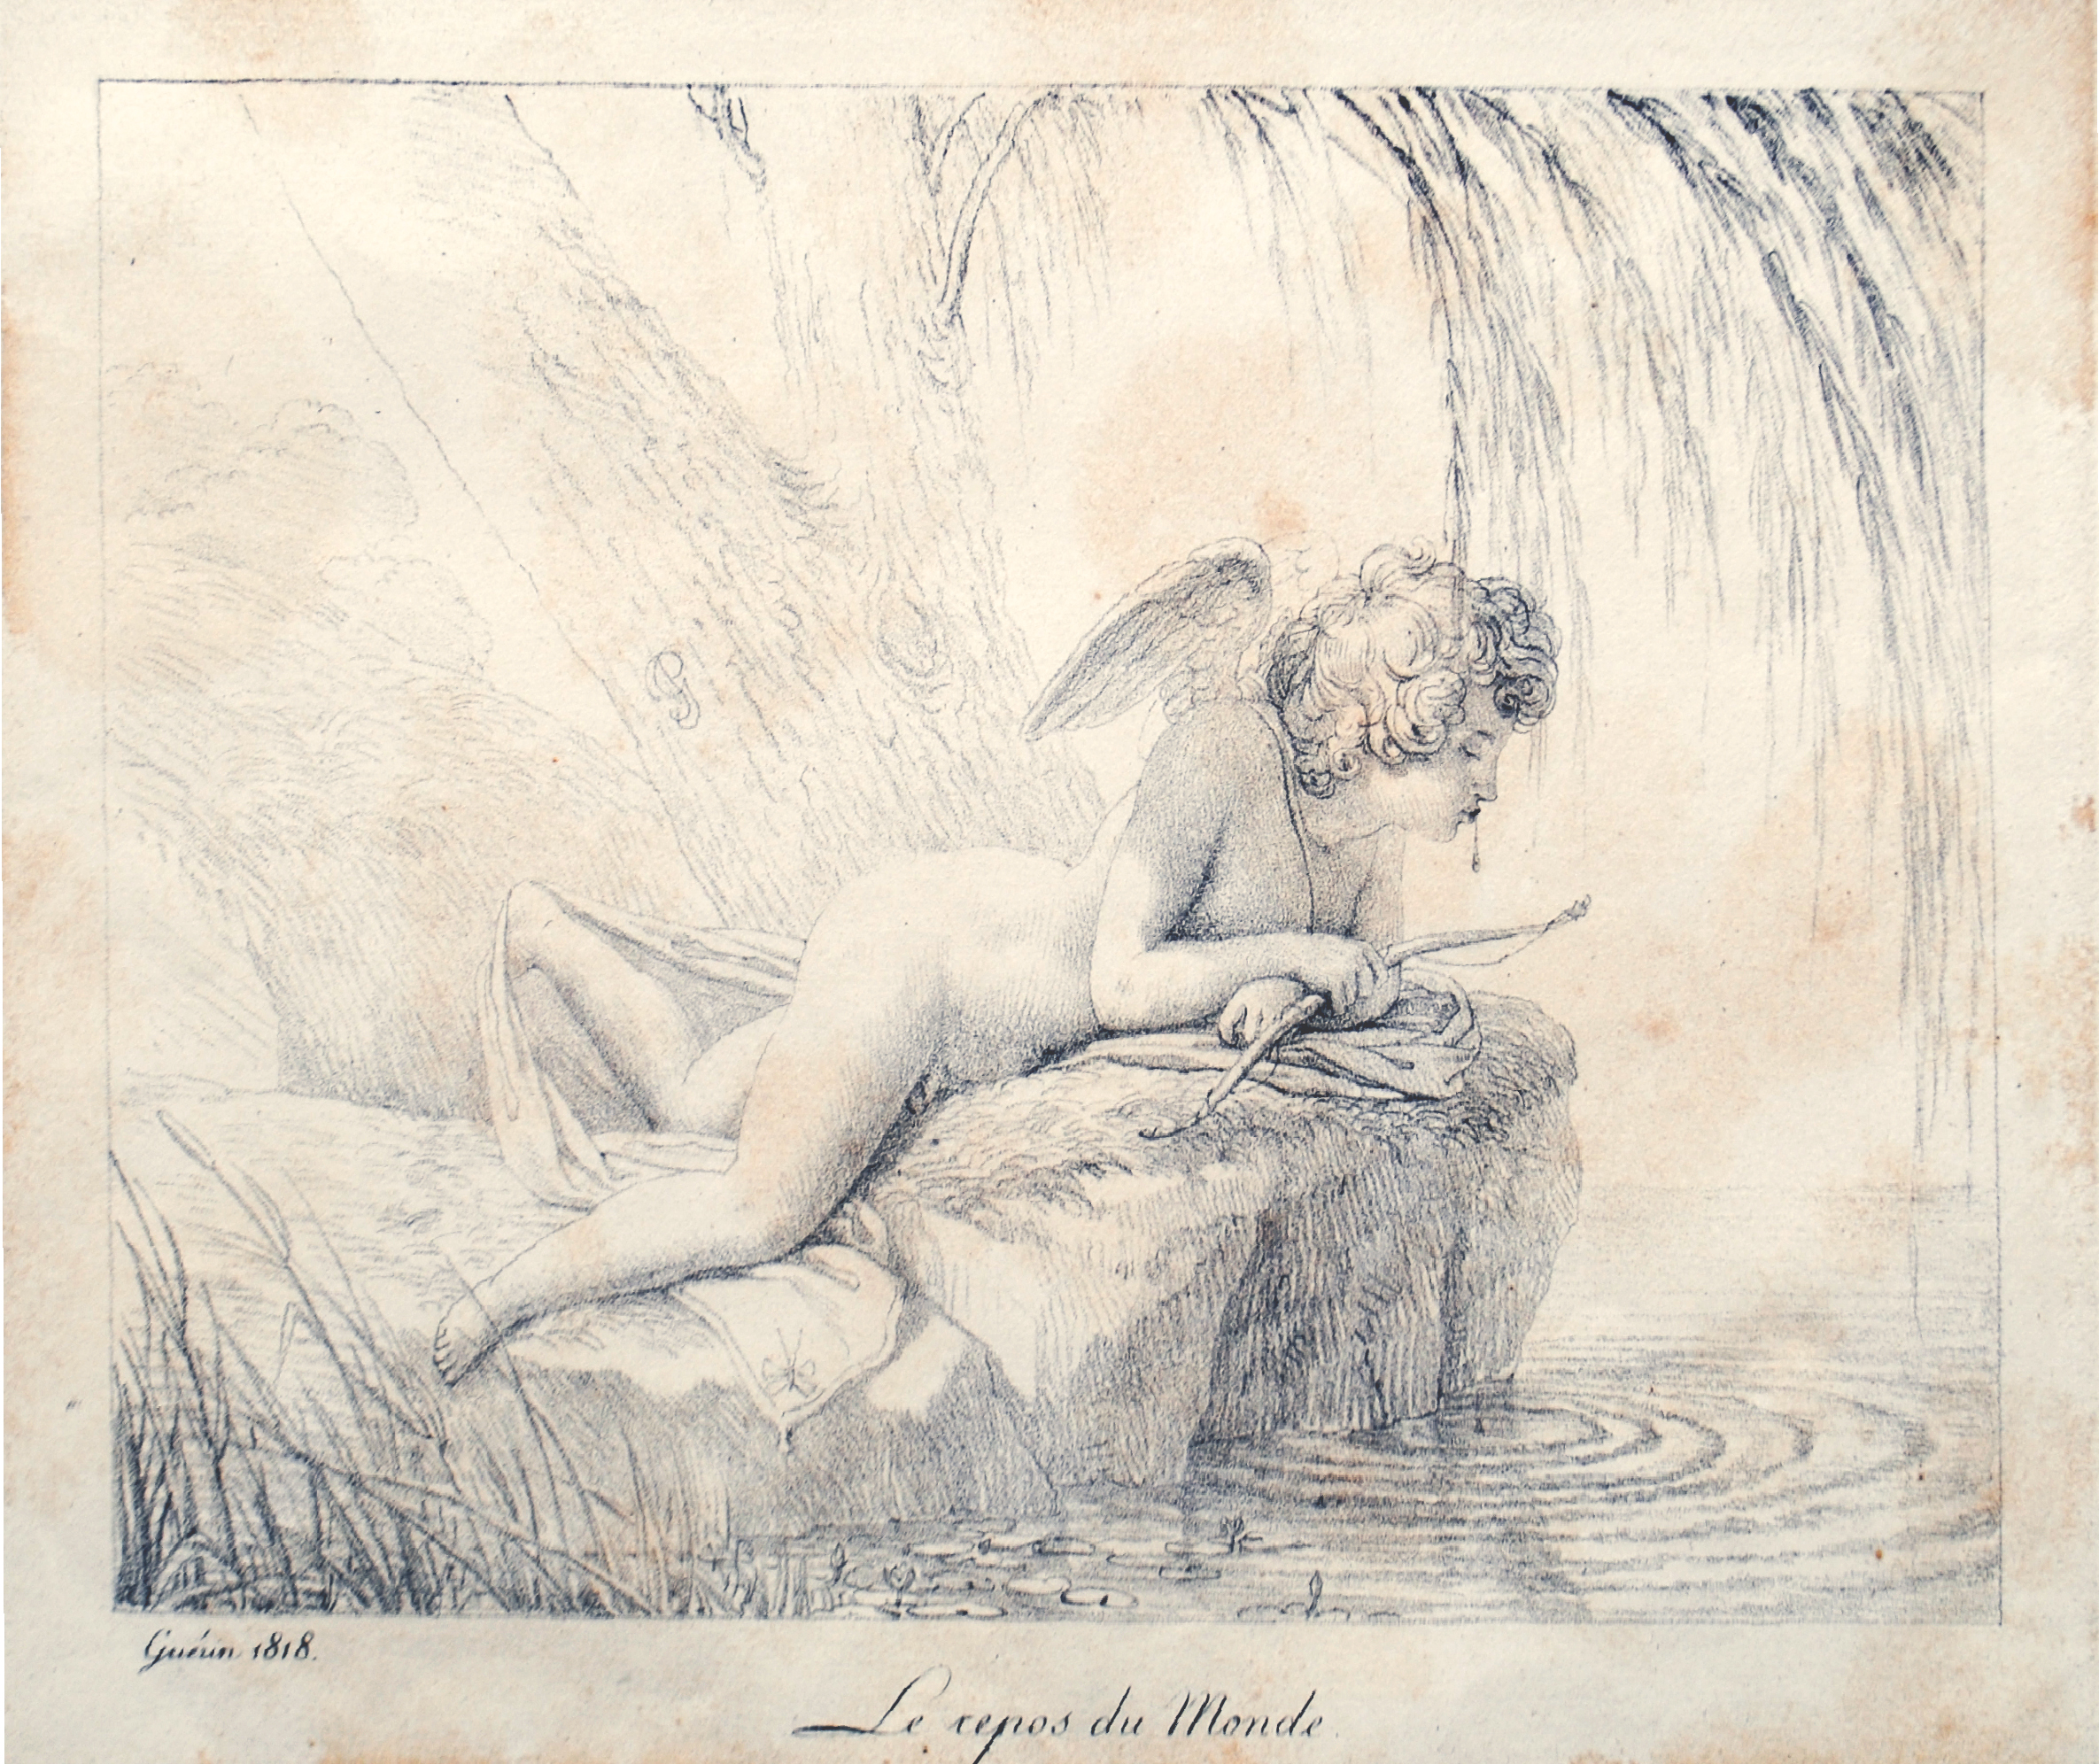 Pierre-Narcisse Gurin, Le Repos du Monde, lithograph, 1816